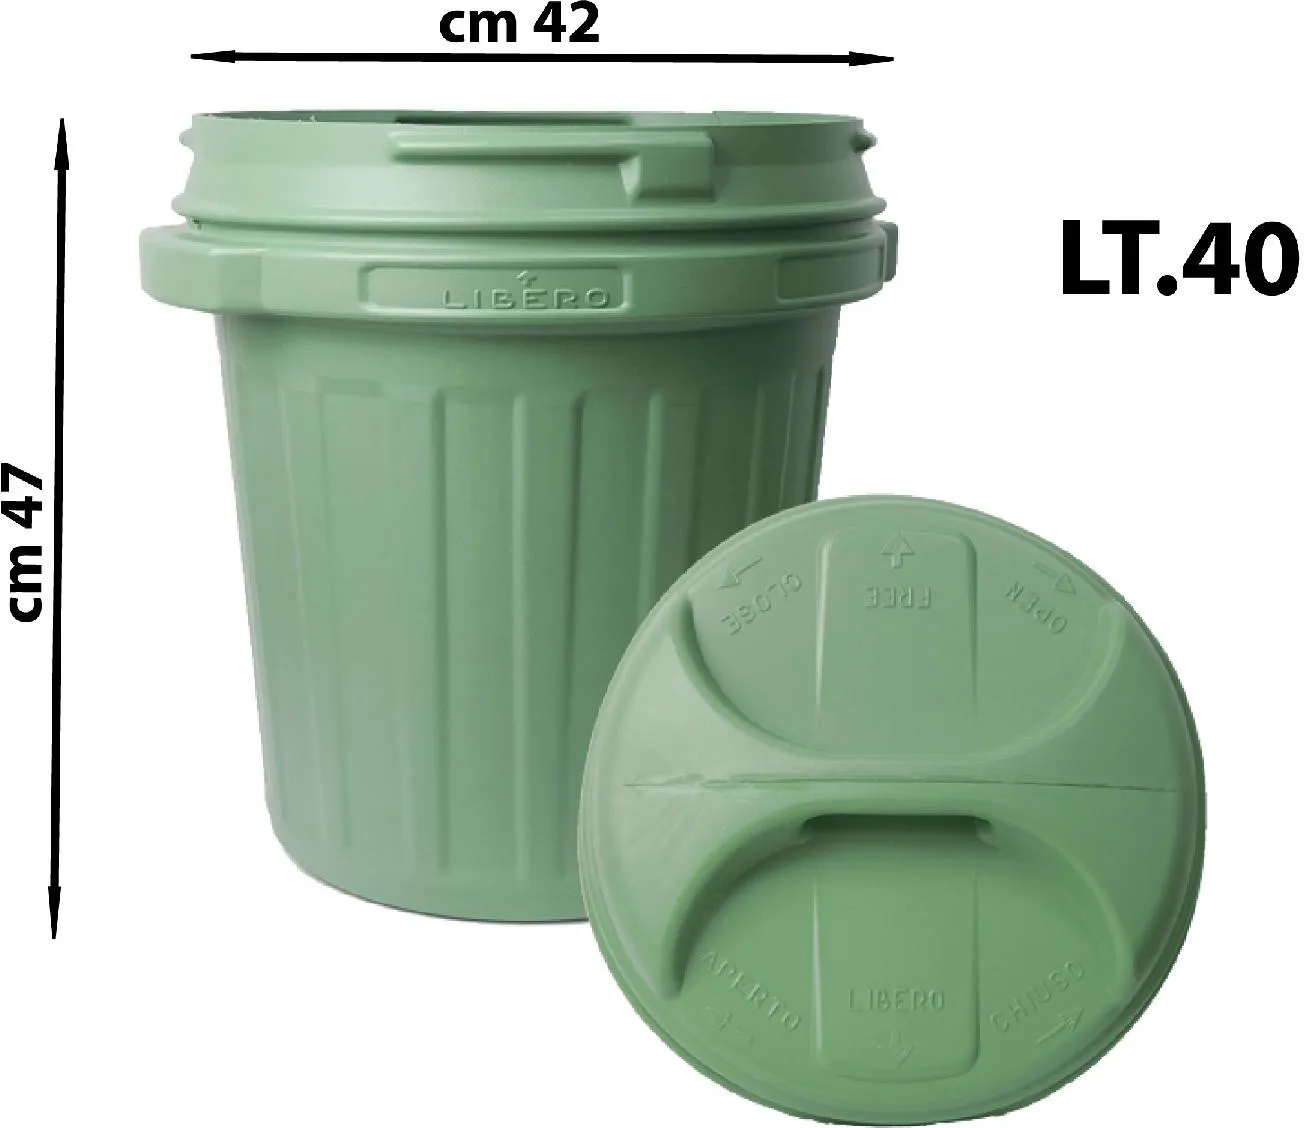 NUOVA PLASTICA ADRIATICA Bidone litri 40 Con Coperchio Verde - A002203